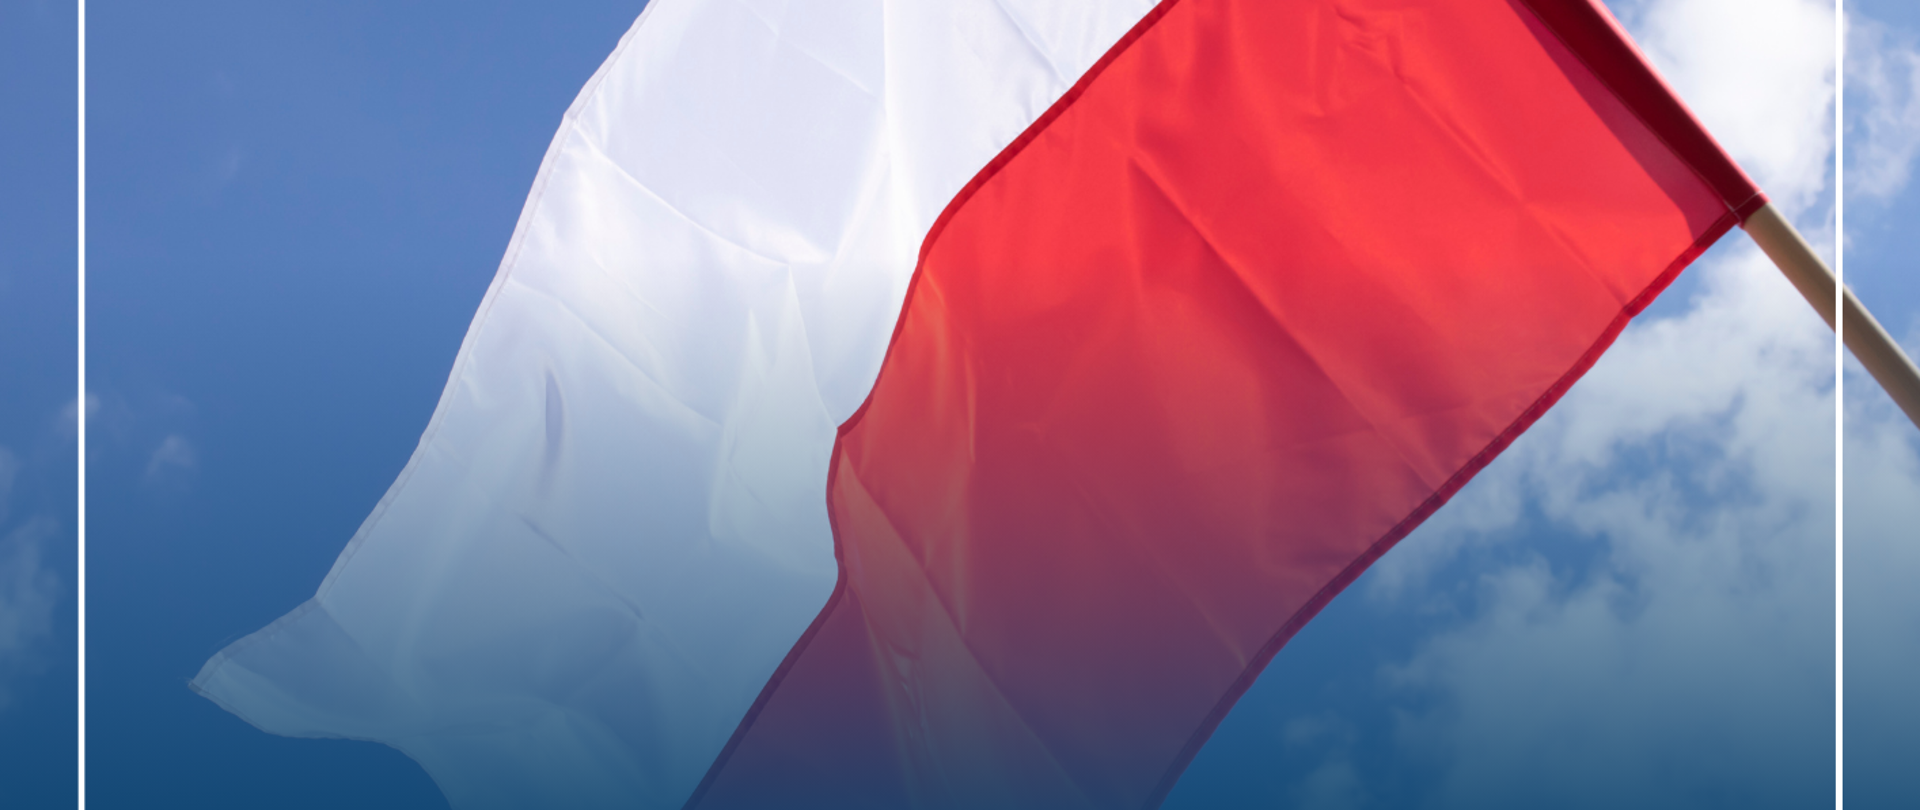 Plakat ze szczegółami koncertu na granatowym tle i zdjęciem flagi Polski